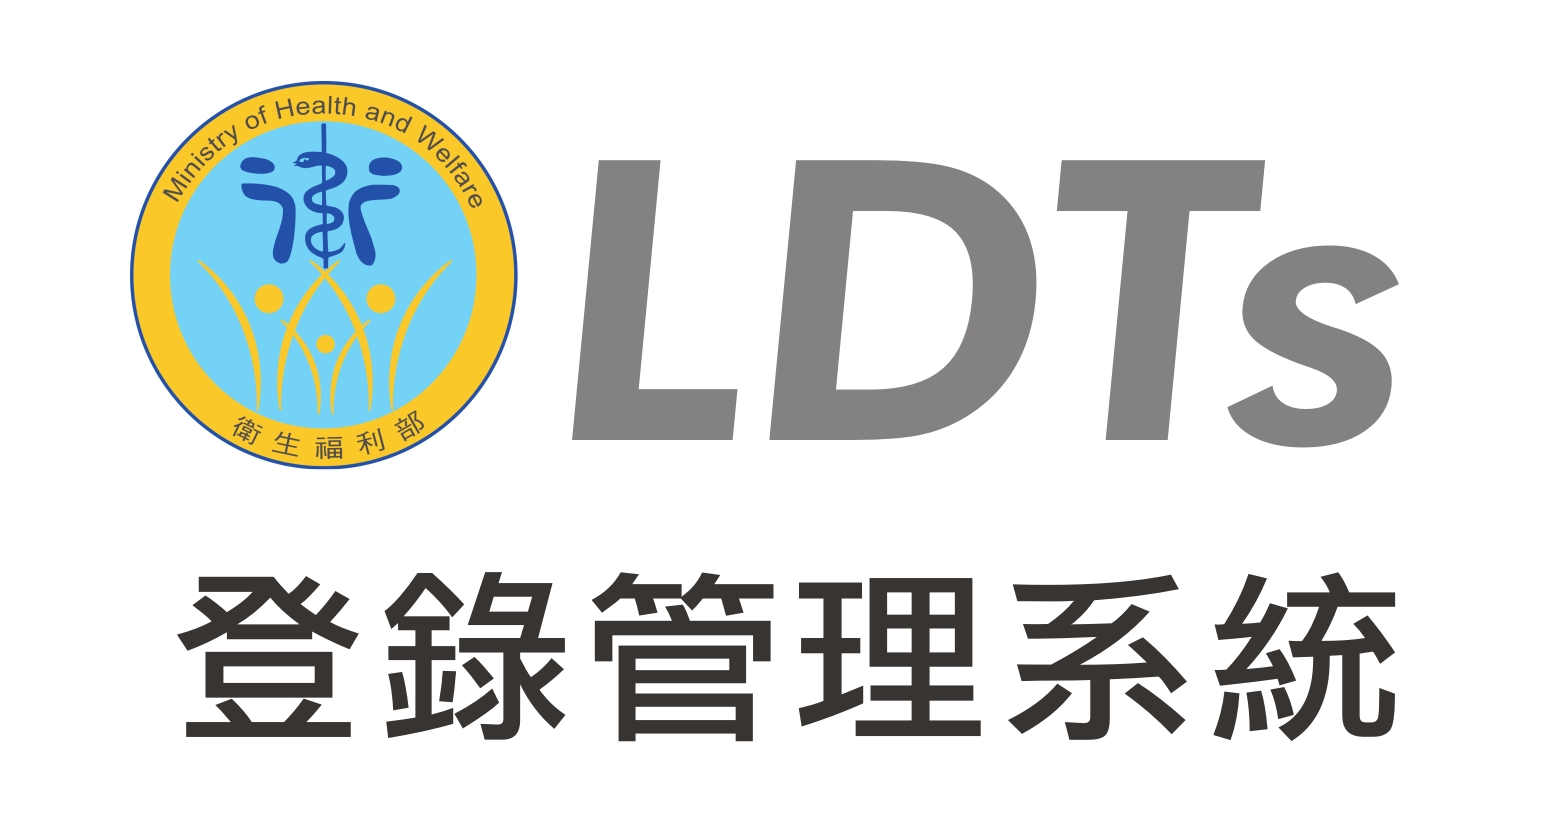 衛生福利部LDTs登錄管理系統